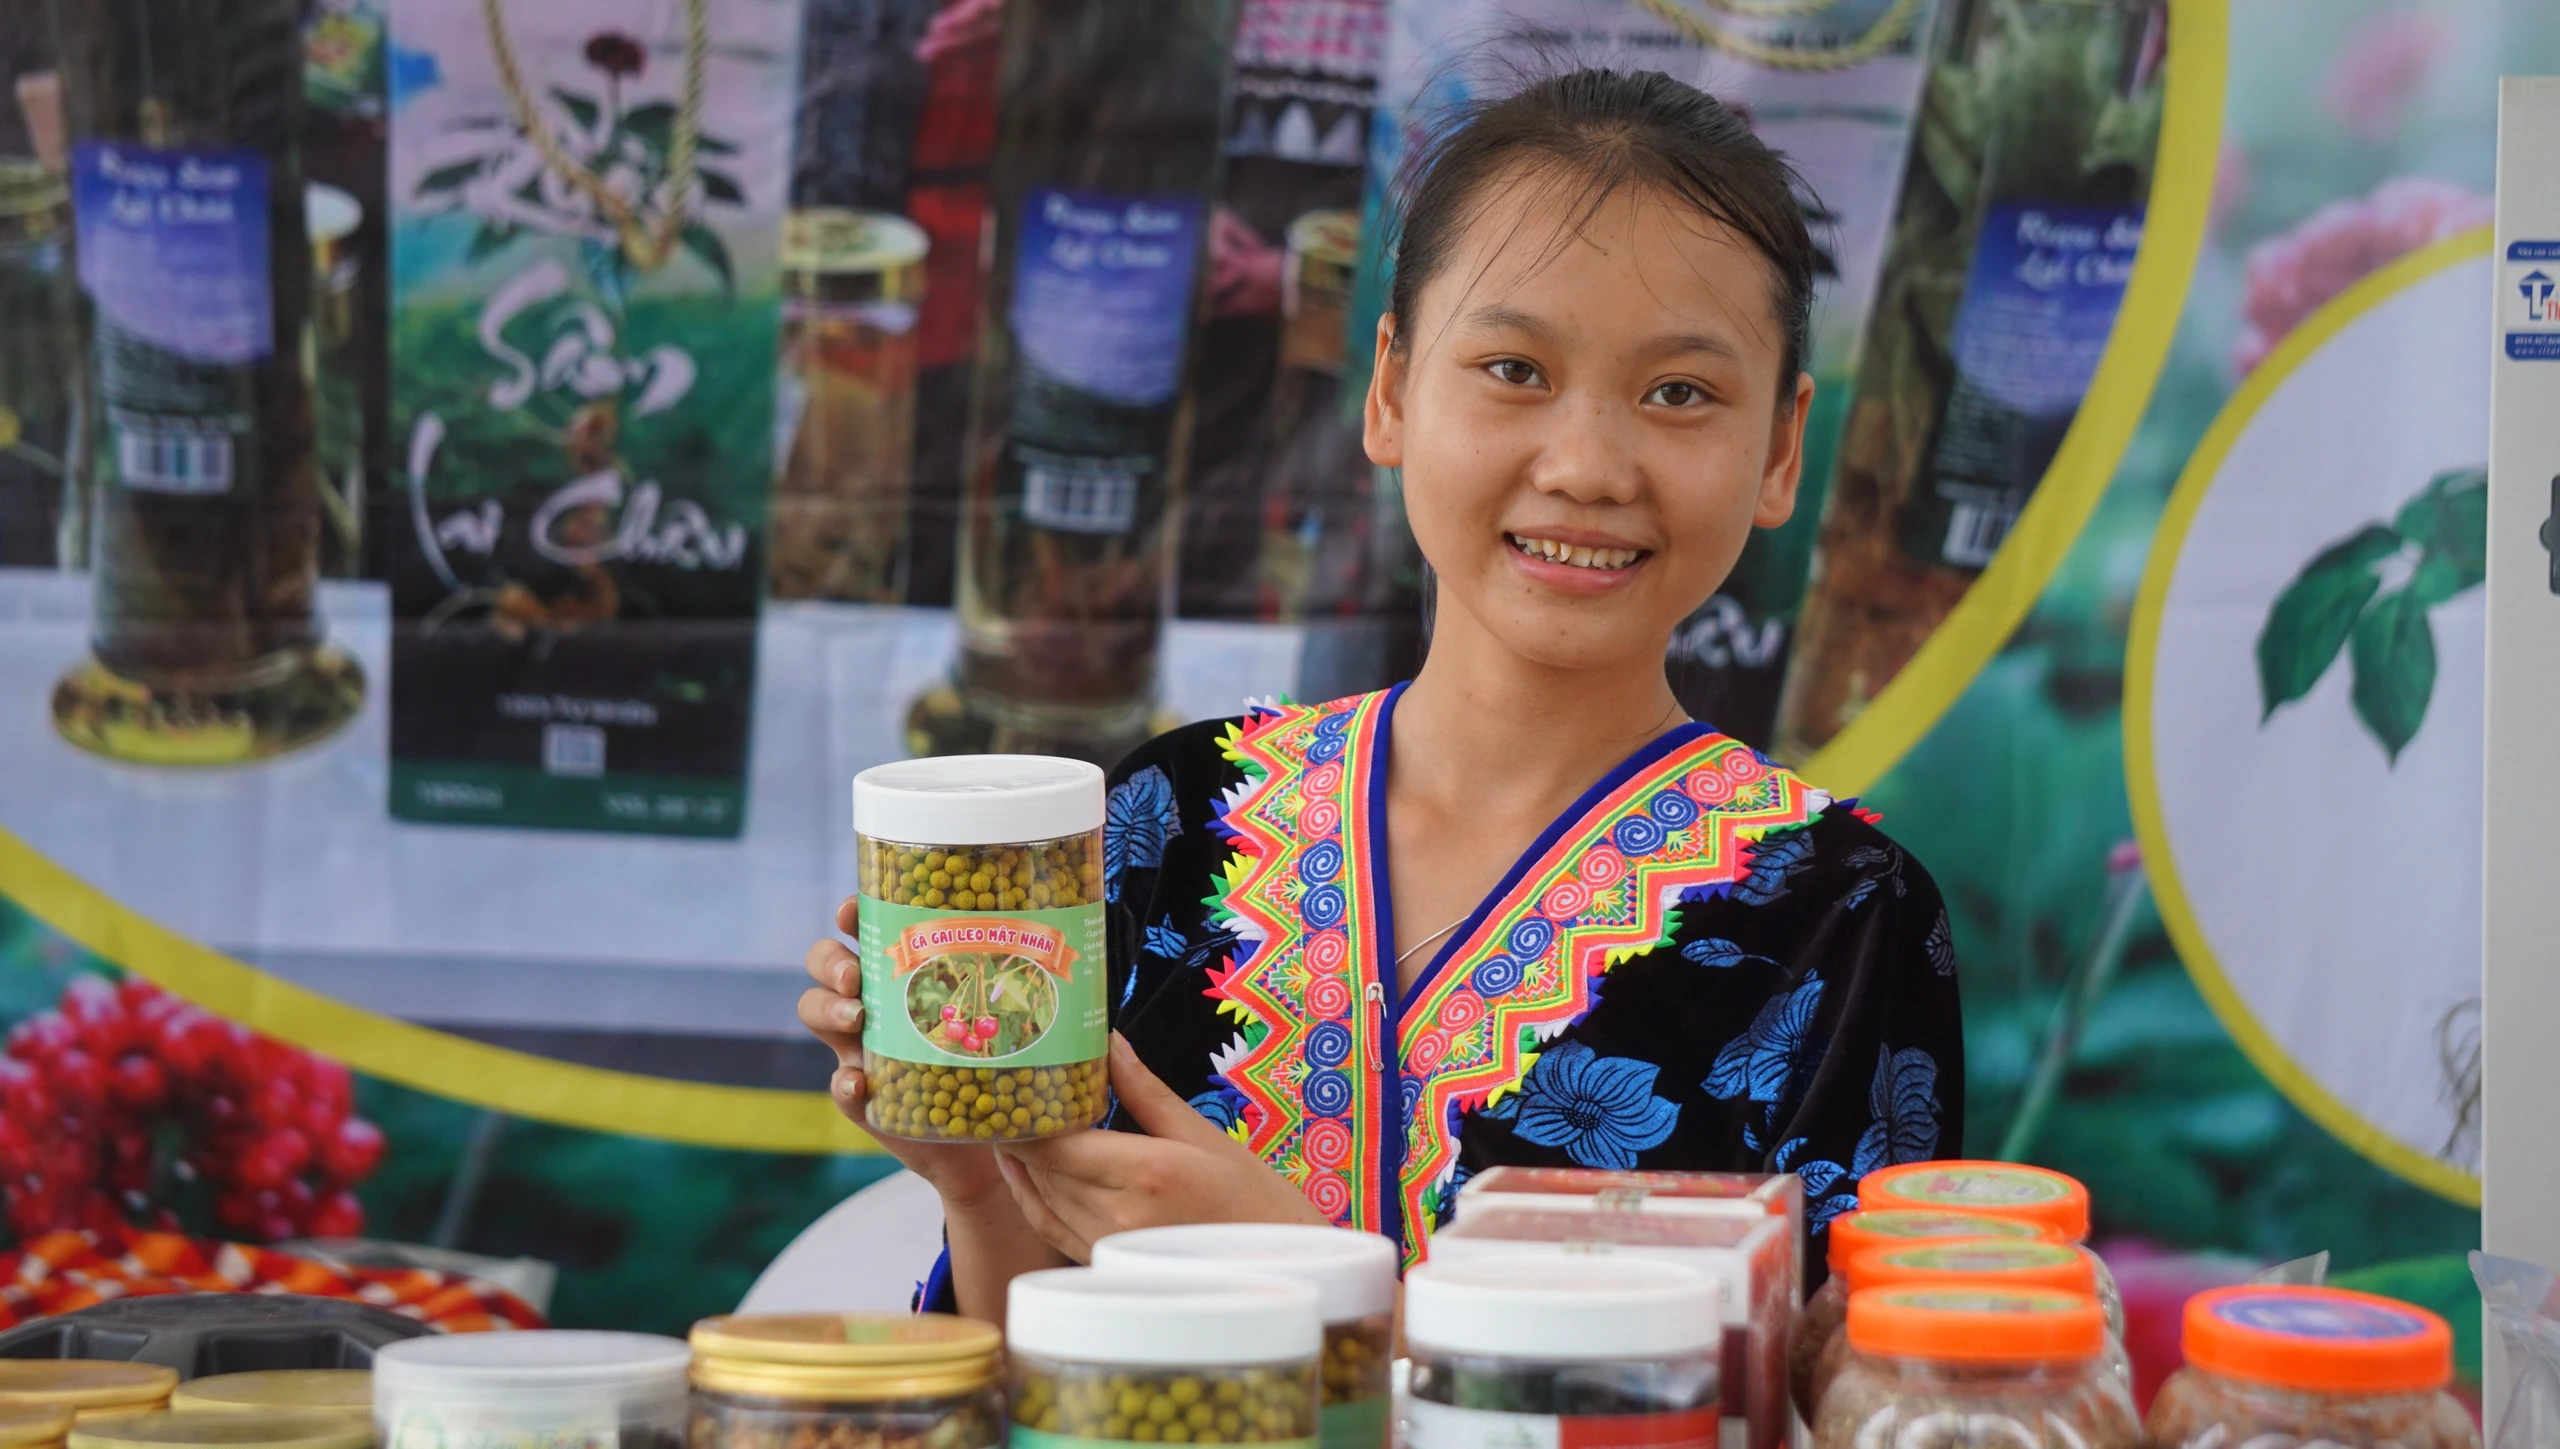 Tinh hoa ẩm thực nhiều tỉnh, thành hội tụ tại Sầm Sơn